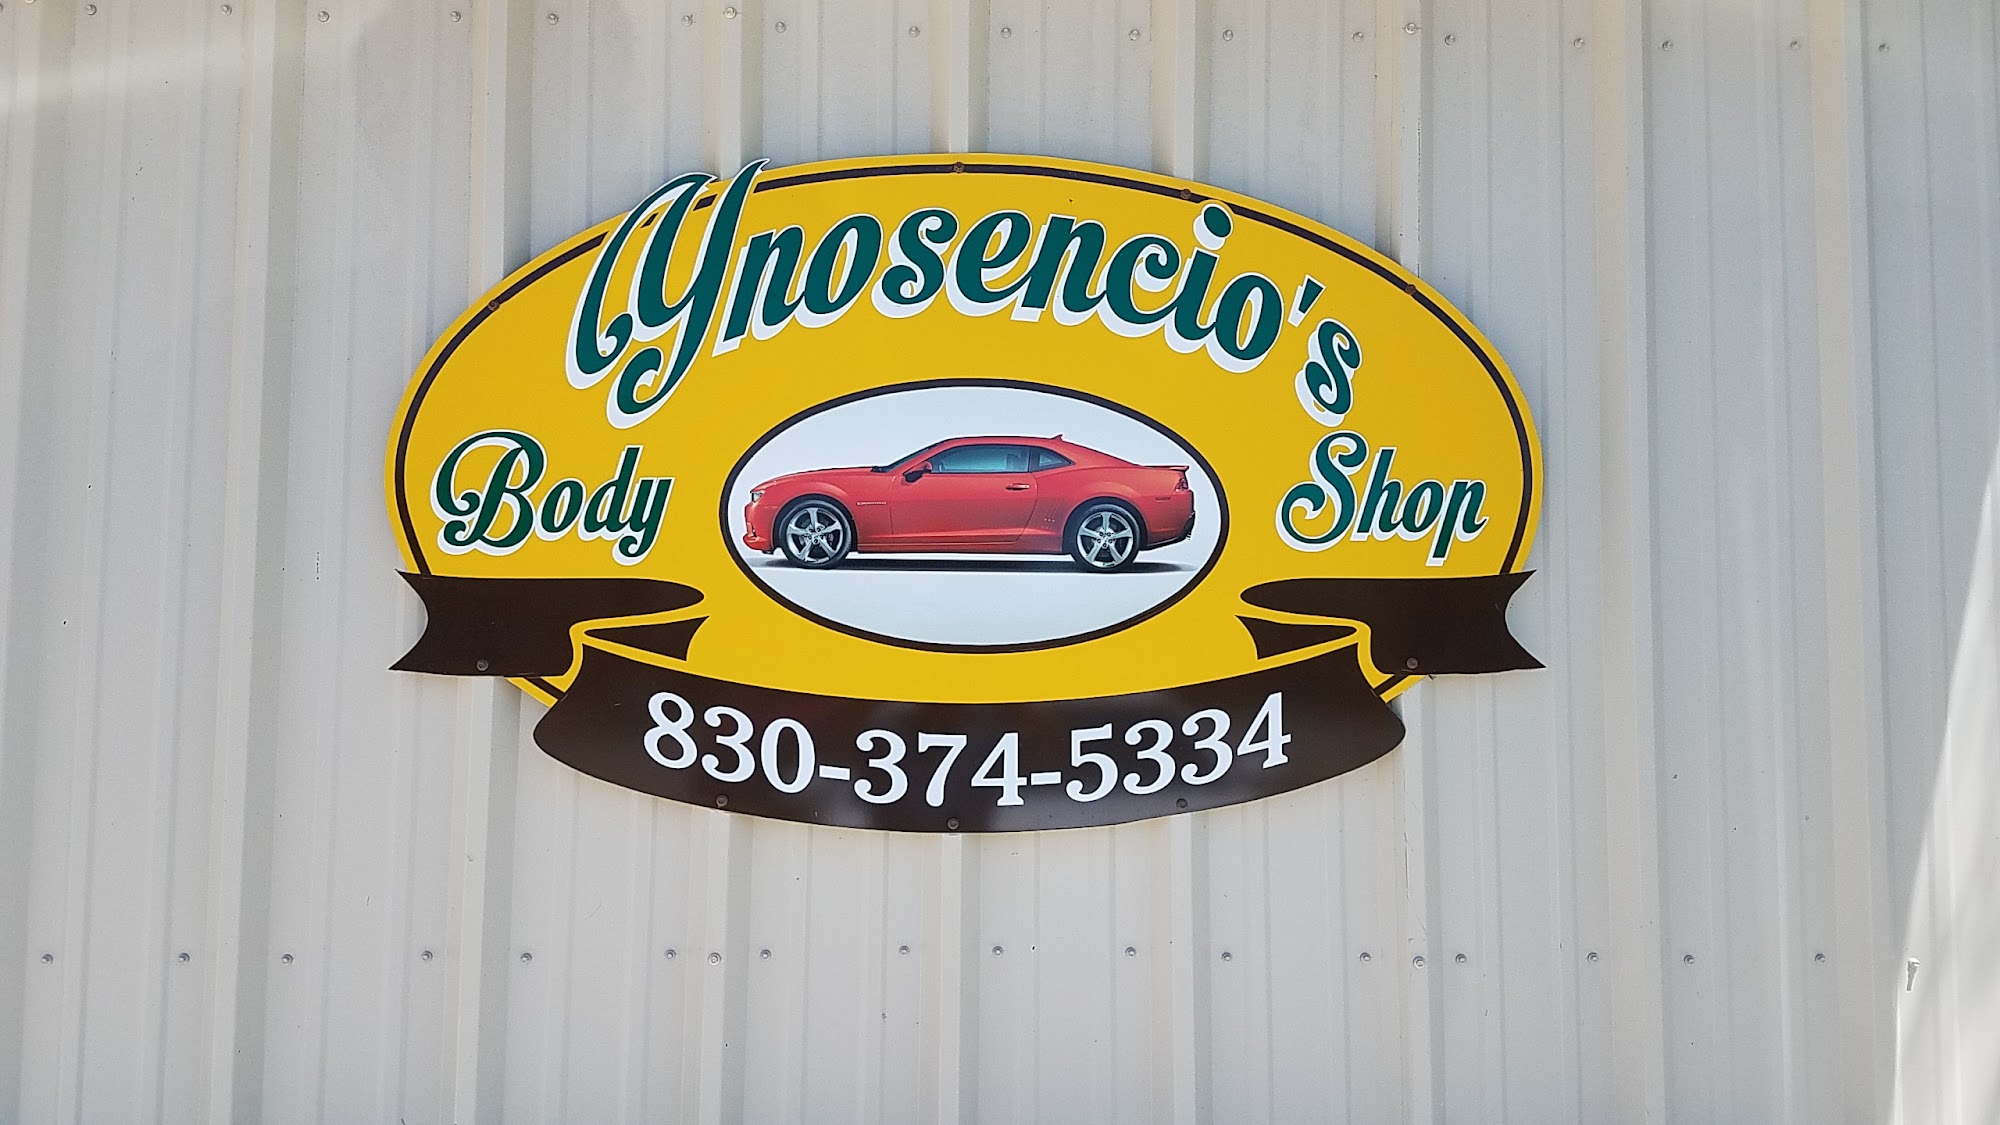 Ynosencio's Body Shop